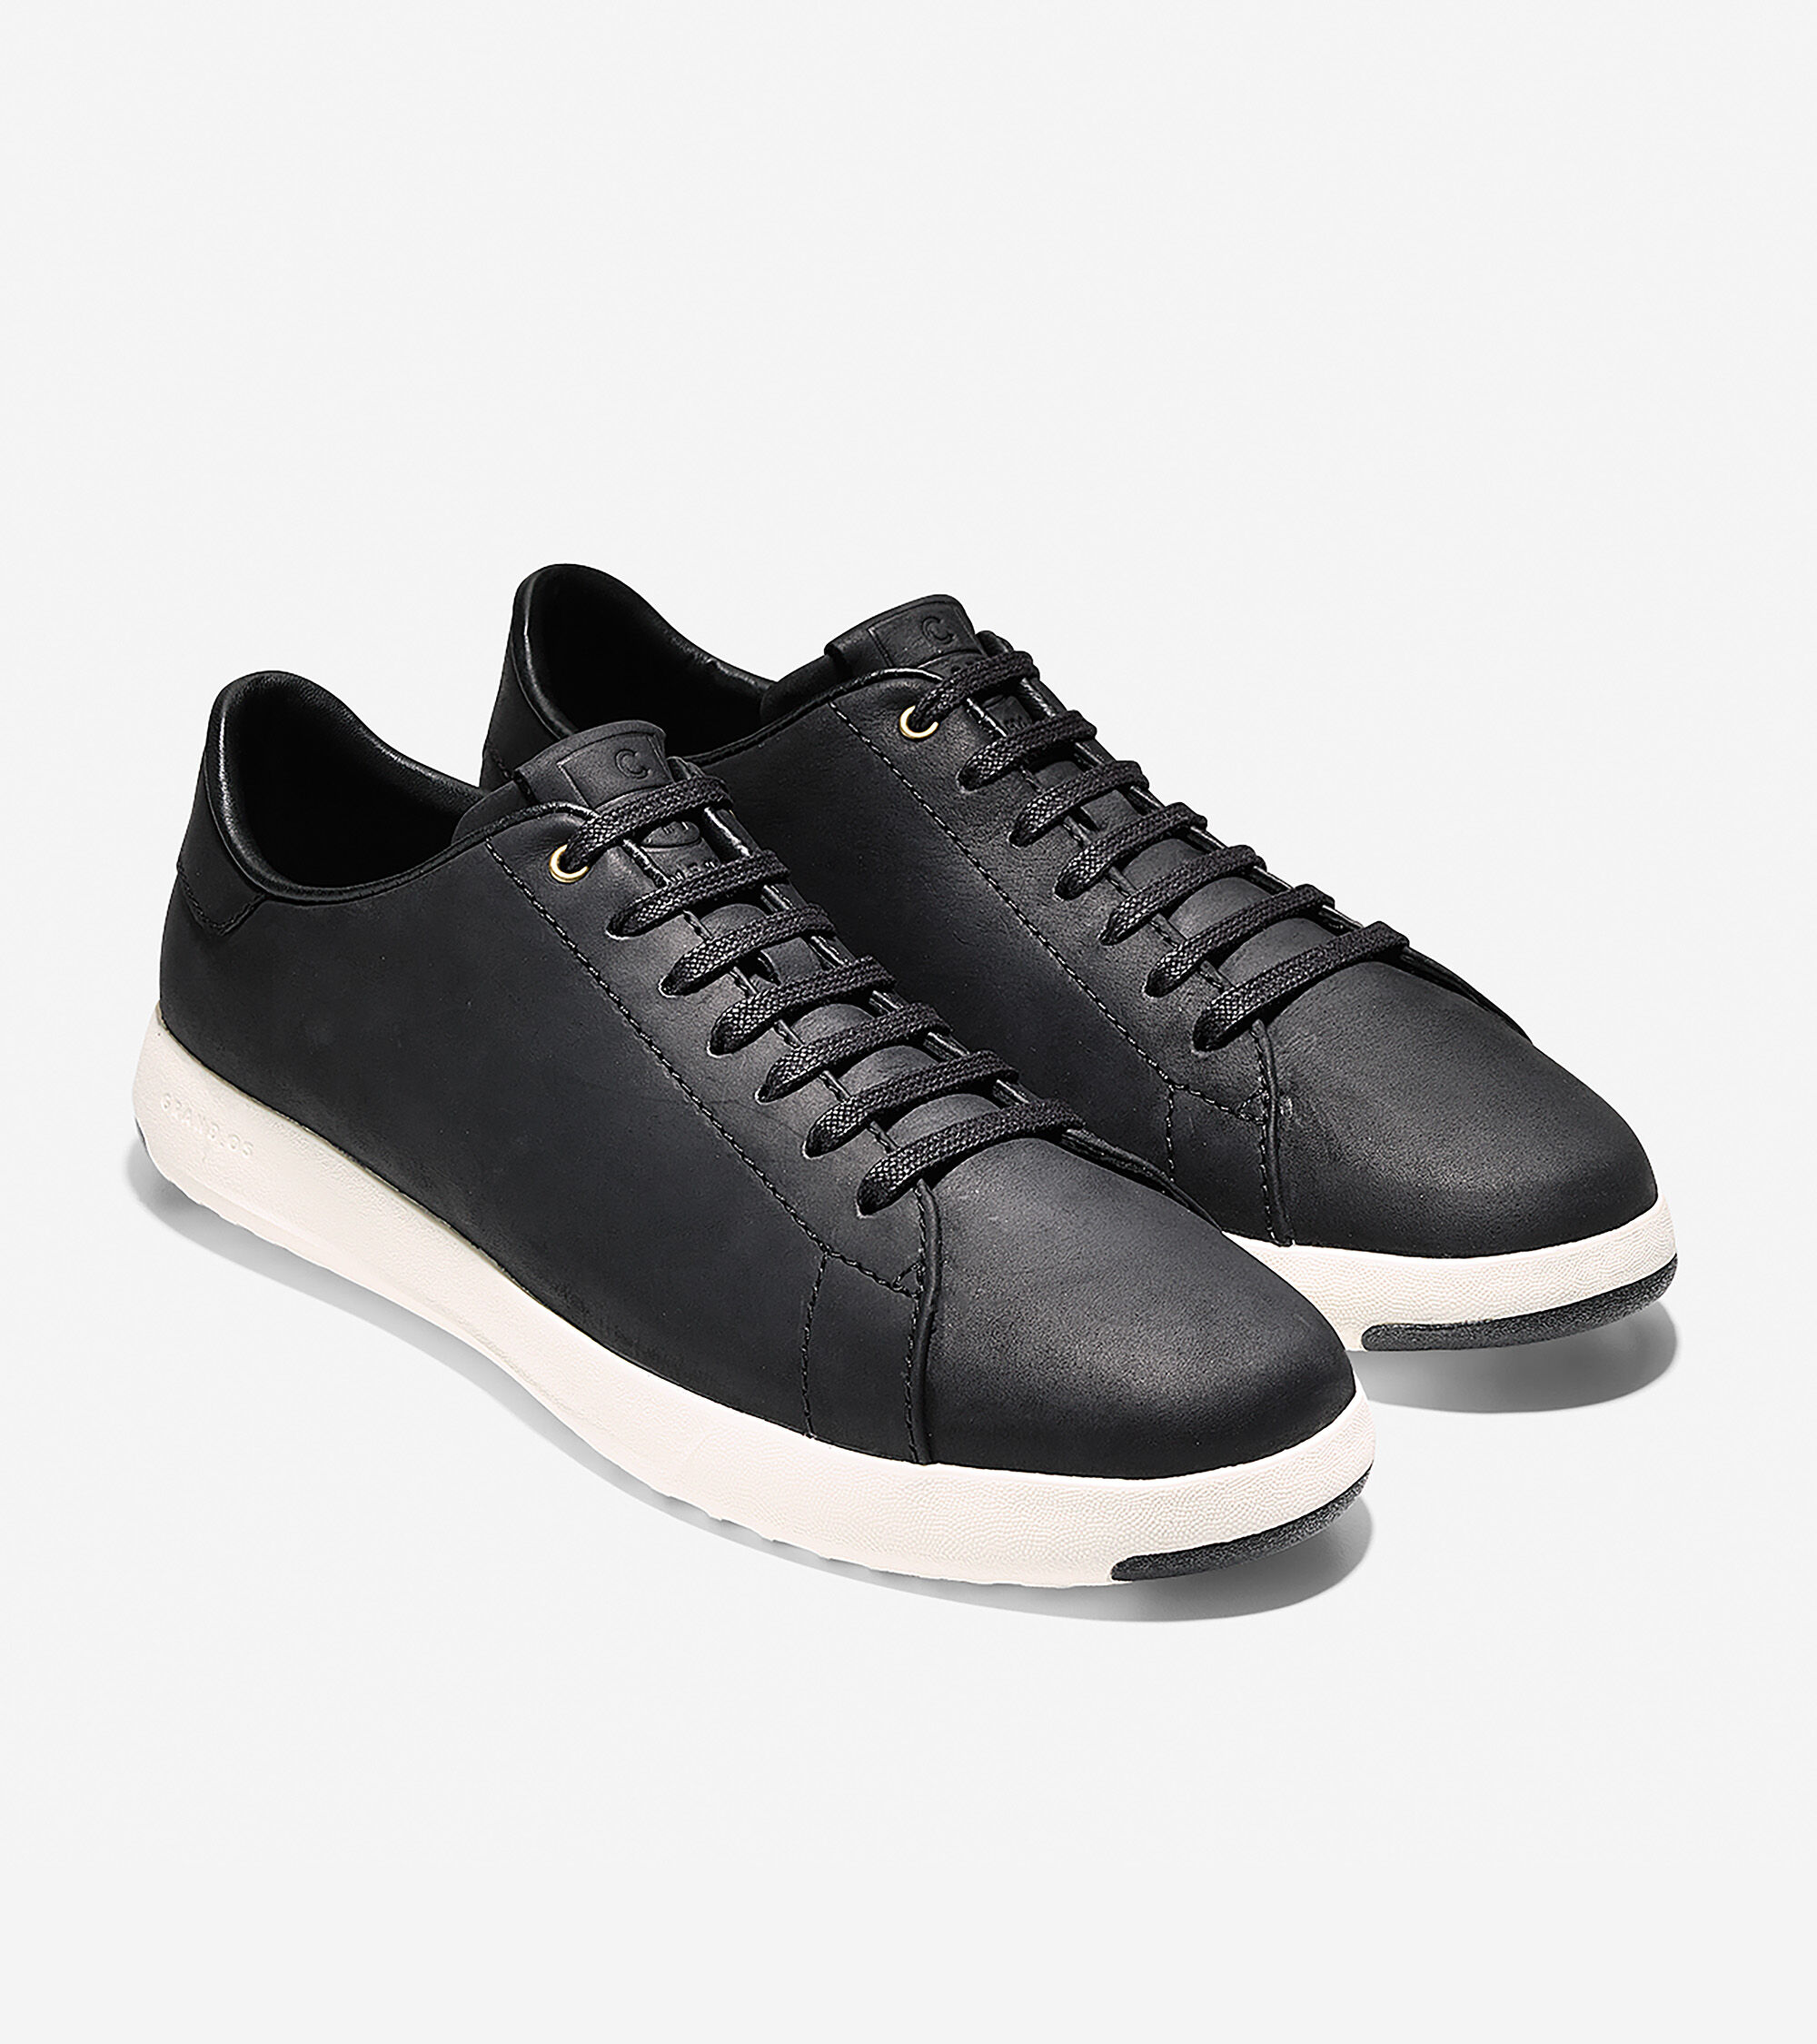 Men's GrandPro Tennis Sneakers in Black Leather | Cole Haan